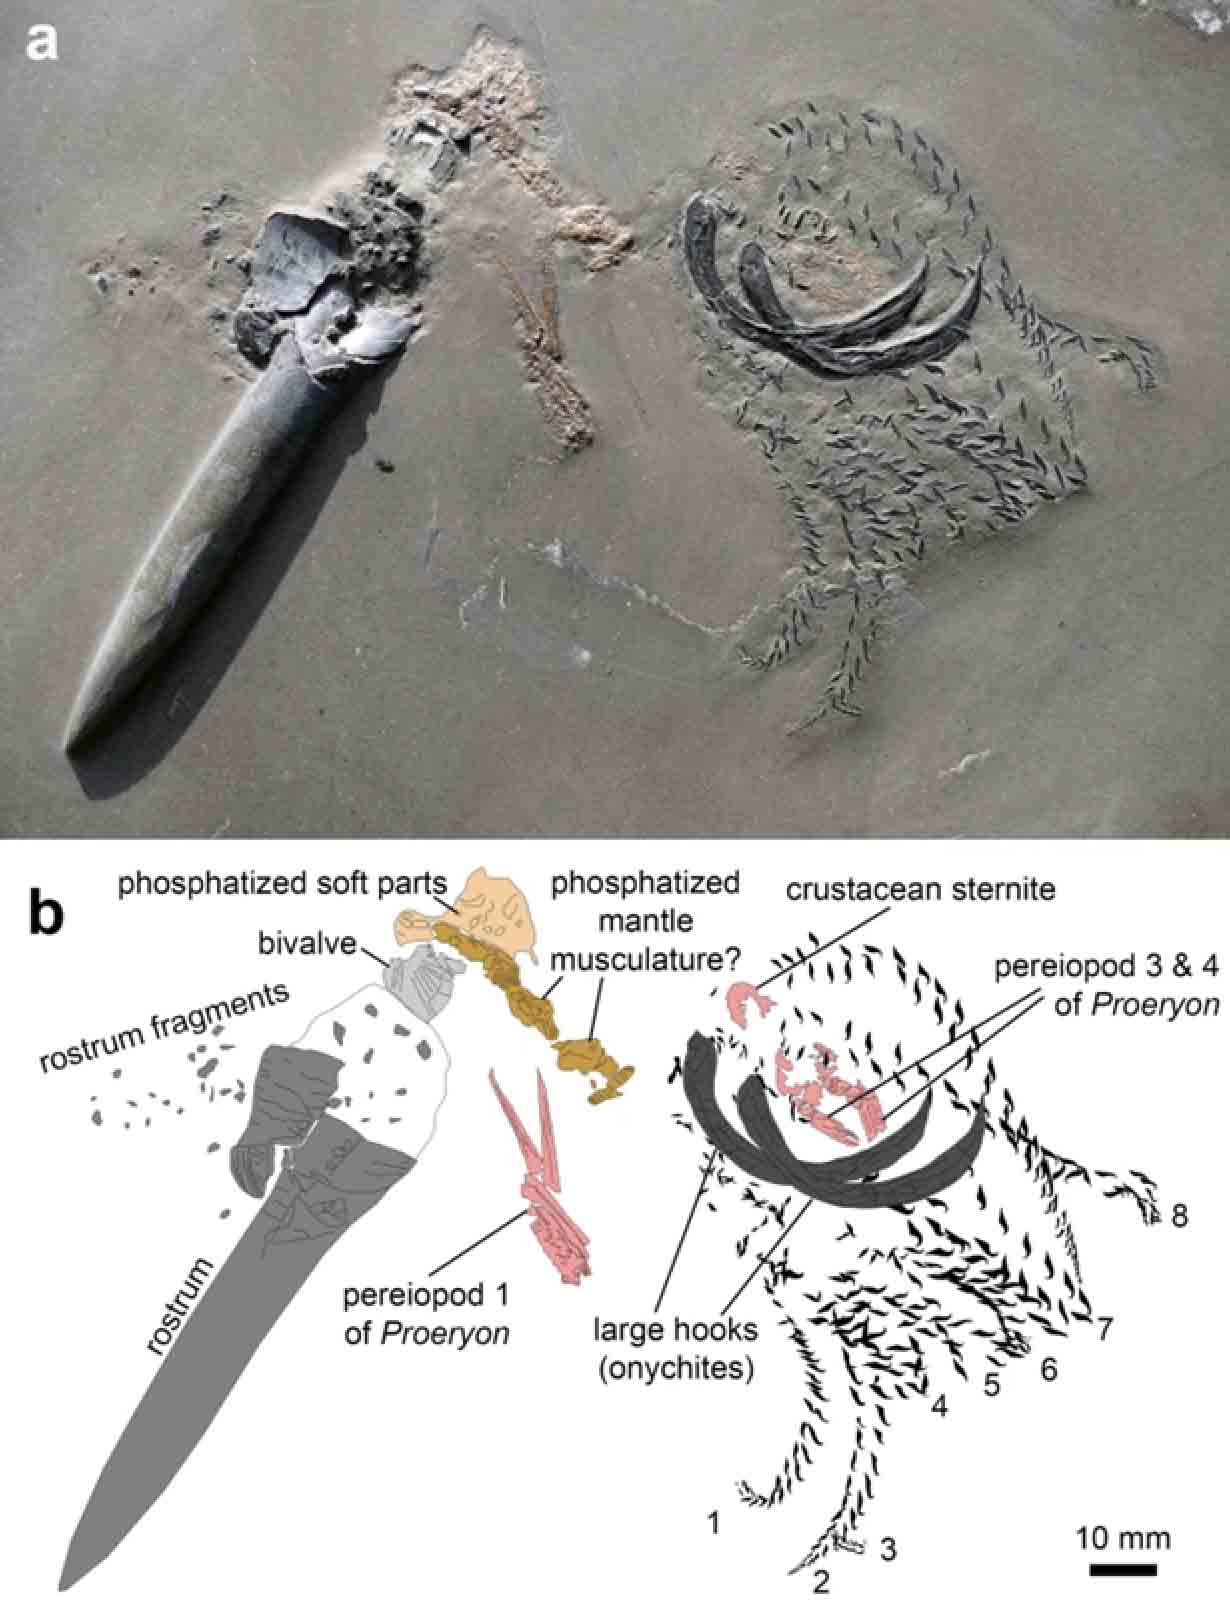 a) Una foto del espécimen fósil de la era Jurásica y su presa. b) Dibujo de cámara lucida basado en a). (Diario Suizo de Paleontología)